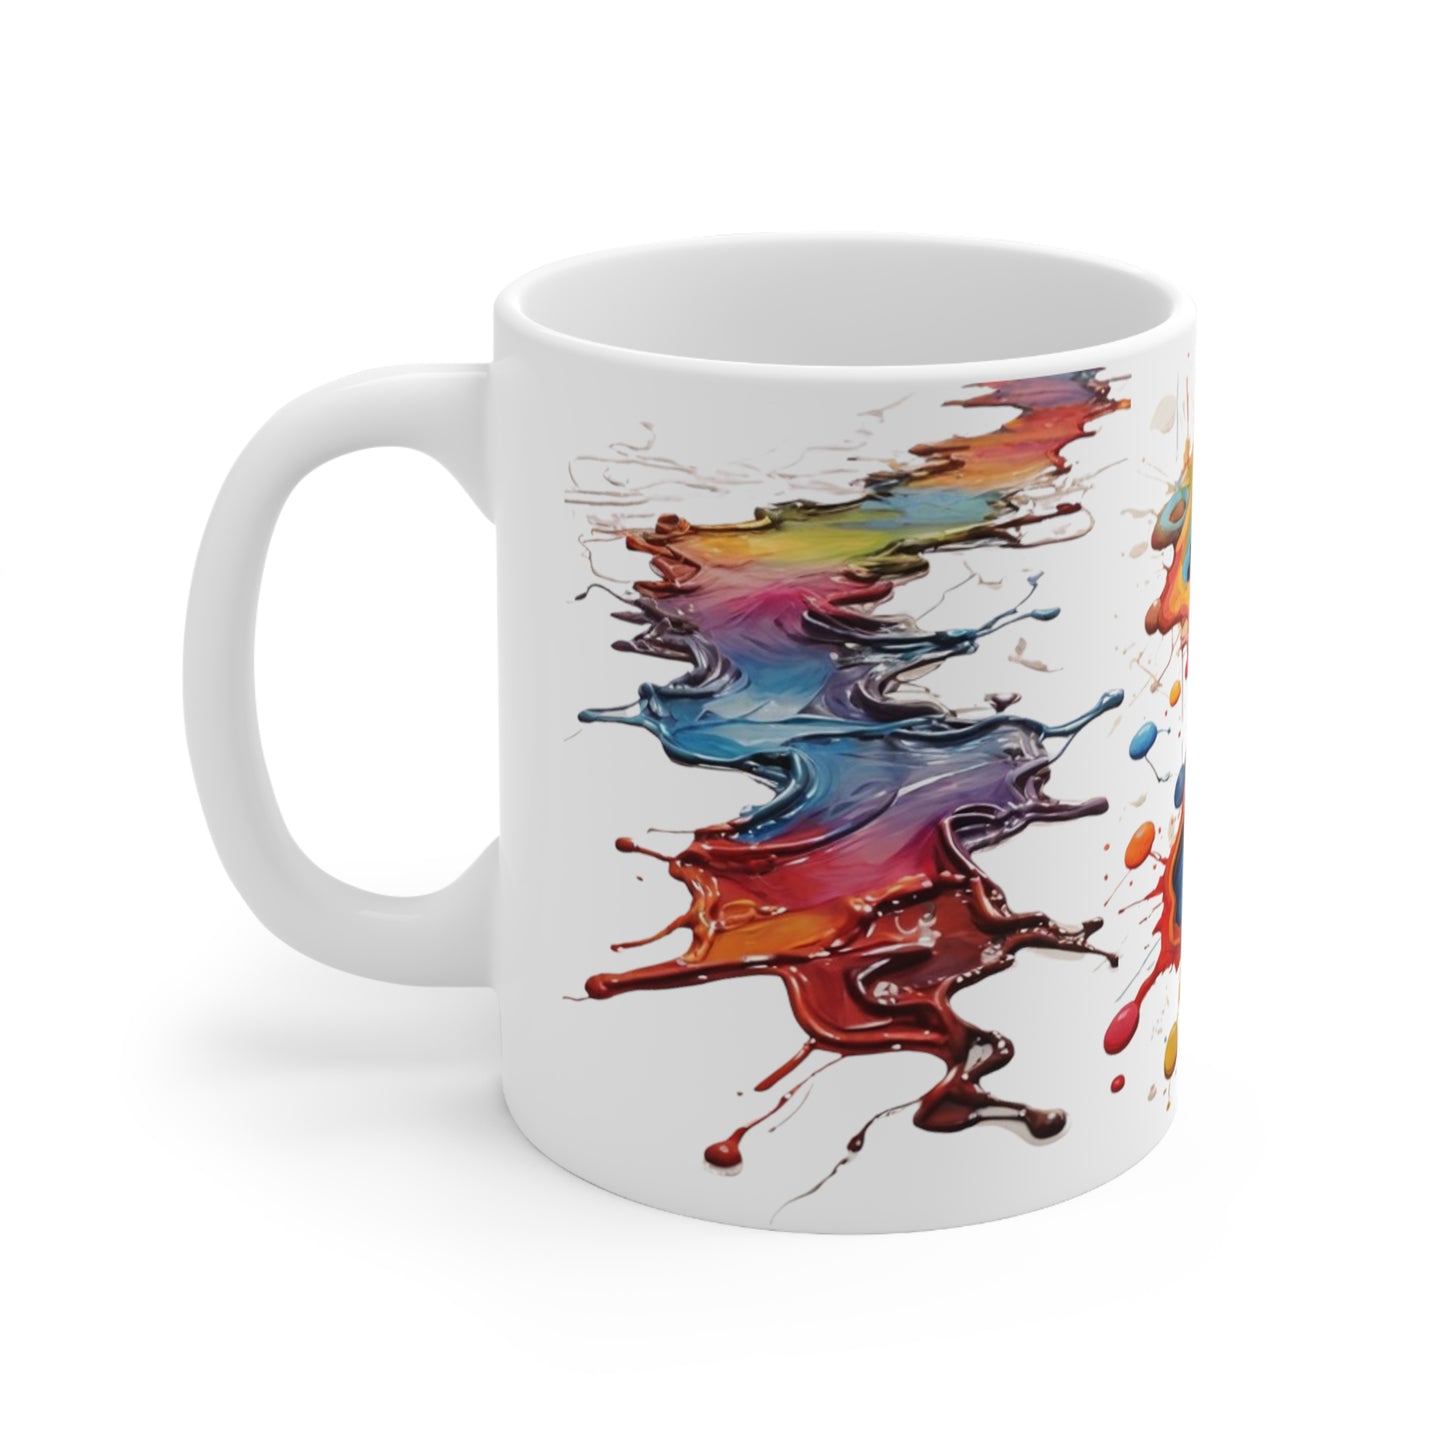 Colourful Messy Puddles Mug - Ceramic Coffee Mug 11oz